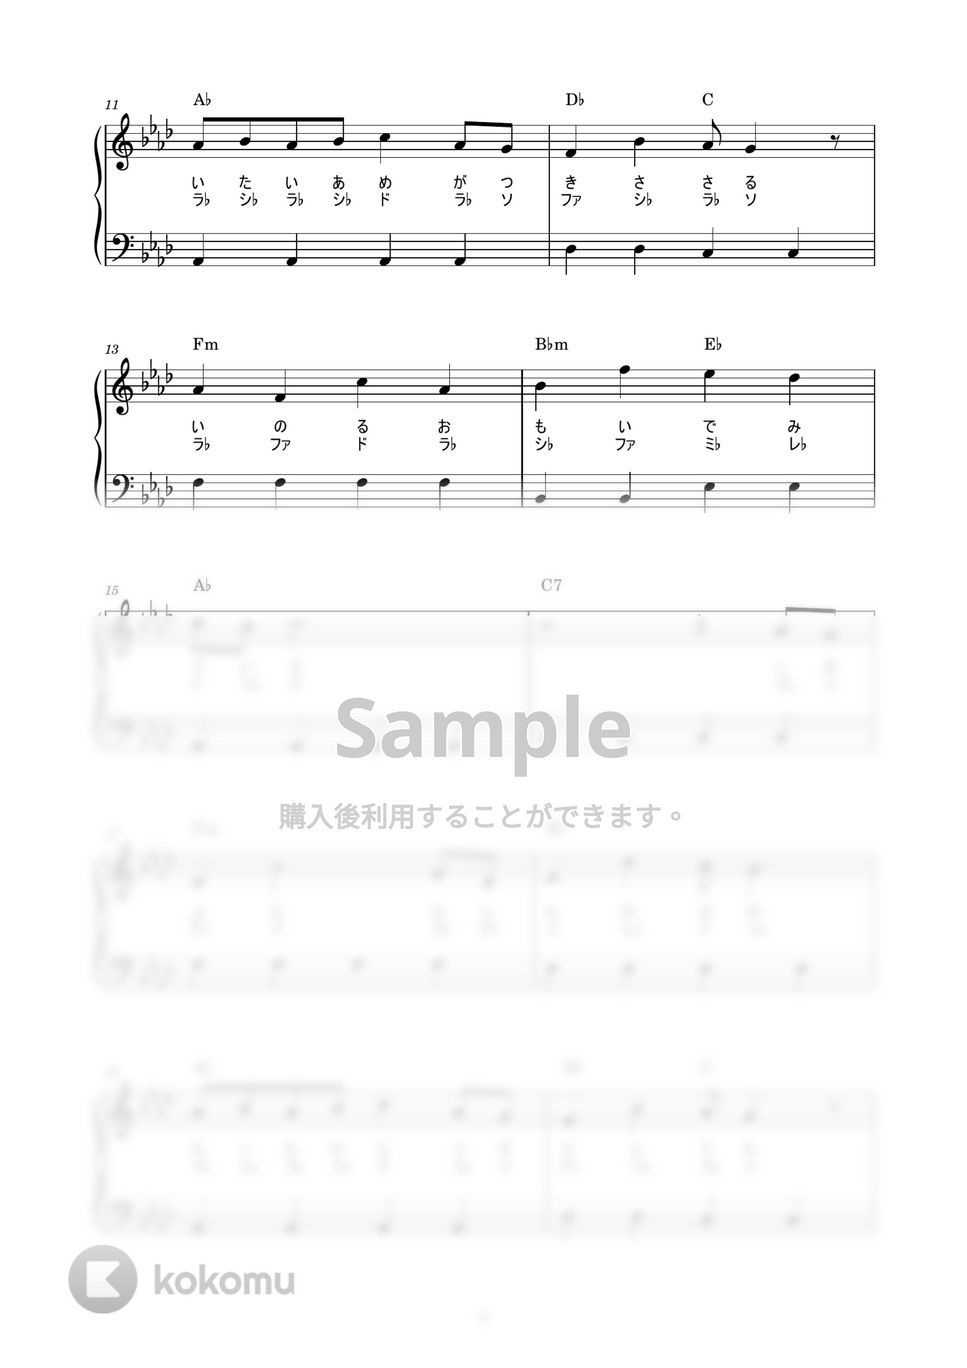 伊織 - キミがいれば (かんたん / 歌詞付き / ドレミ付き / 初心者) by piano.tokyo